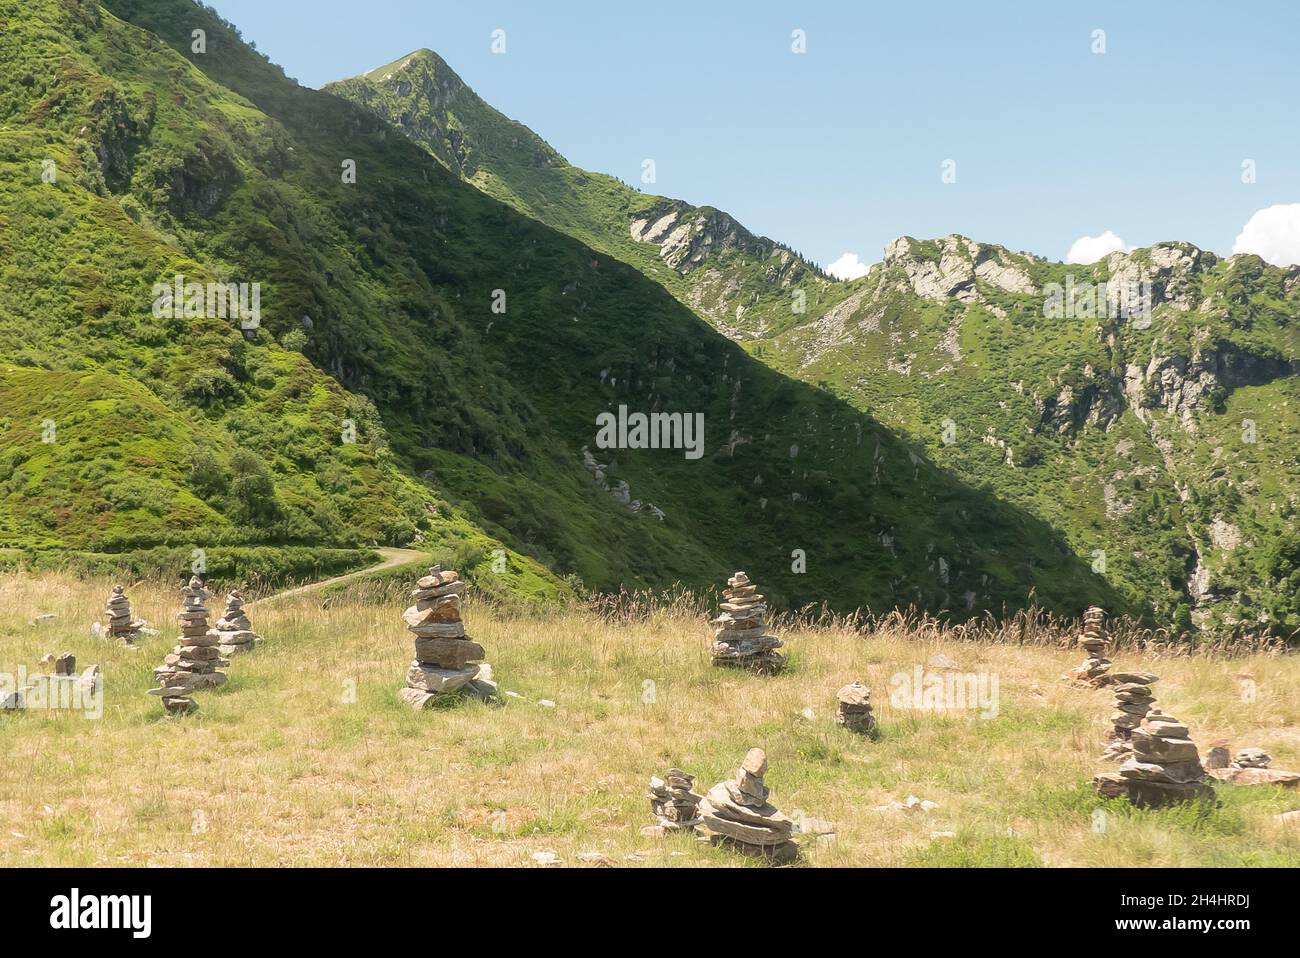 Suisse: Sculpture et œuvre d'art près du sommet de Monte Tamaro Banque D'Images